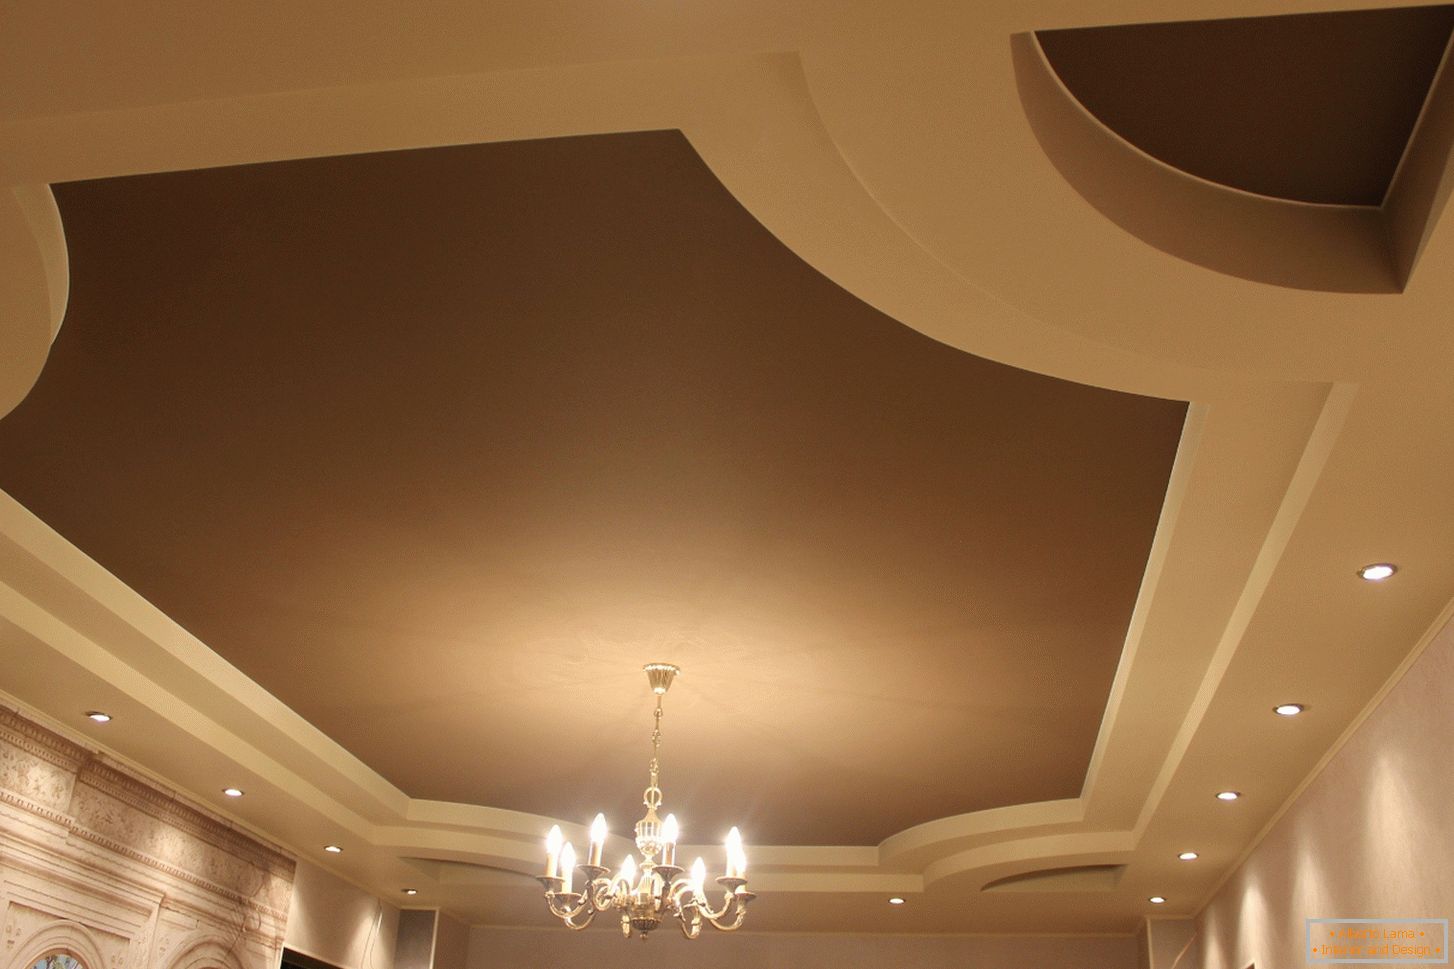 Matné roztažitelné PVC stropy pro pokoj pro hosty ve venkovském domě. Víceúrovňová konstrukce stropů vypadá zajímavě ve světle béžové a tmavě hnědé barvě.